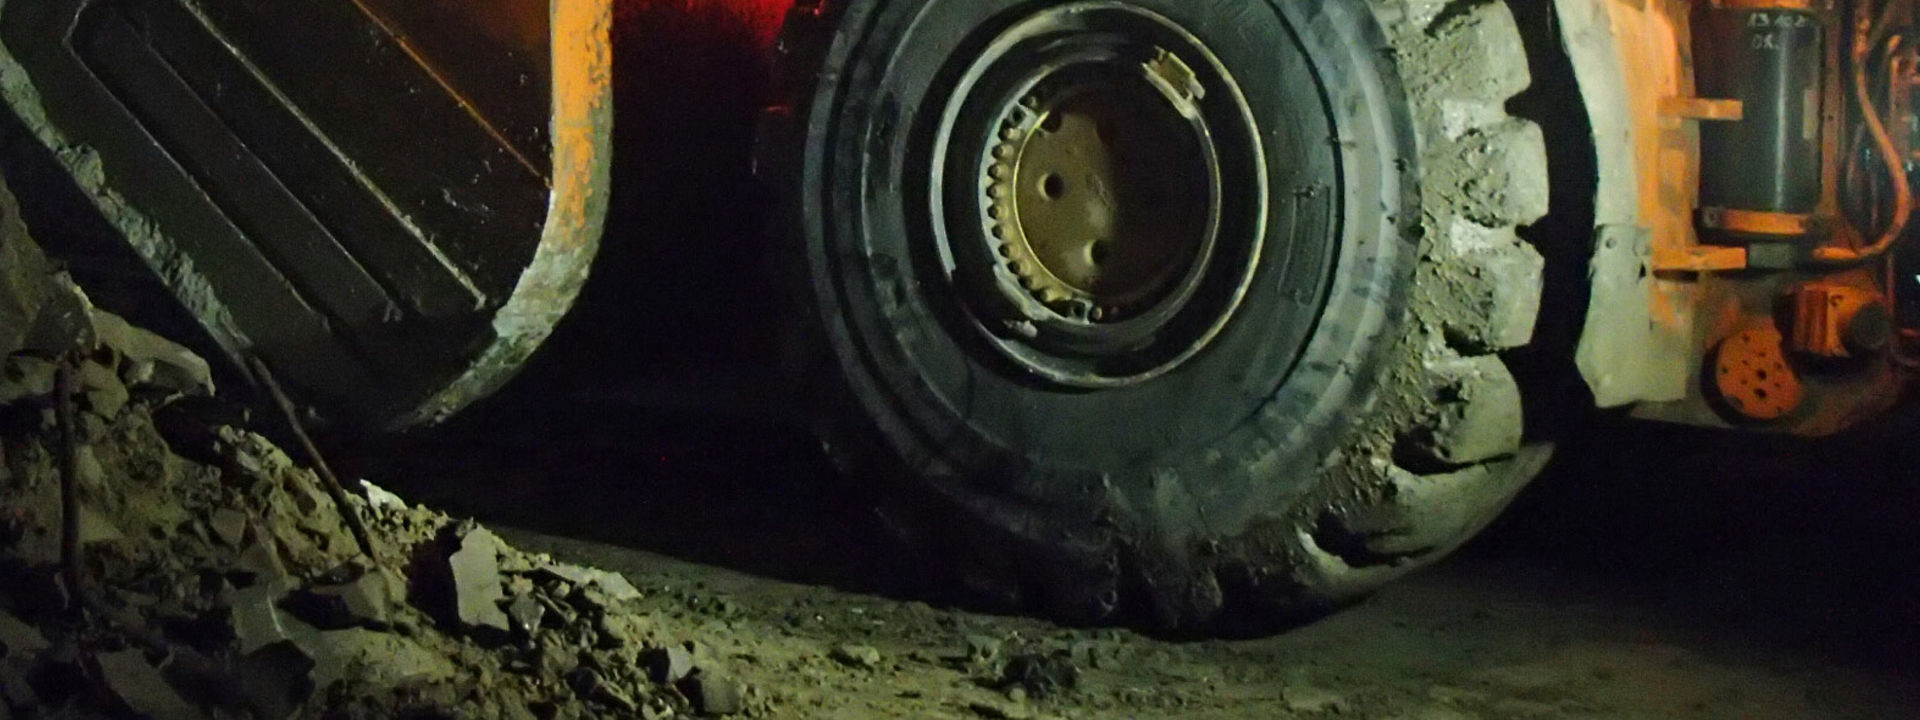 Egy nagy rakodó teherautó dolgozik egy földalatti bányában